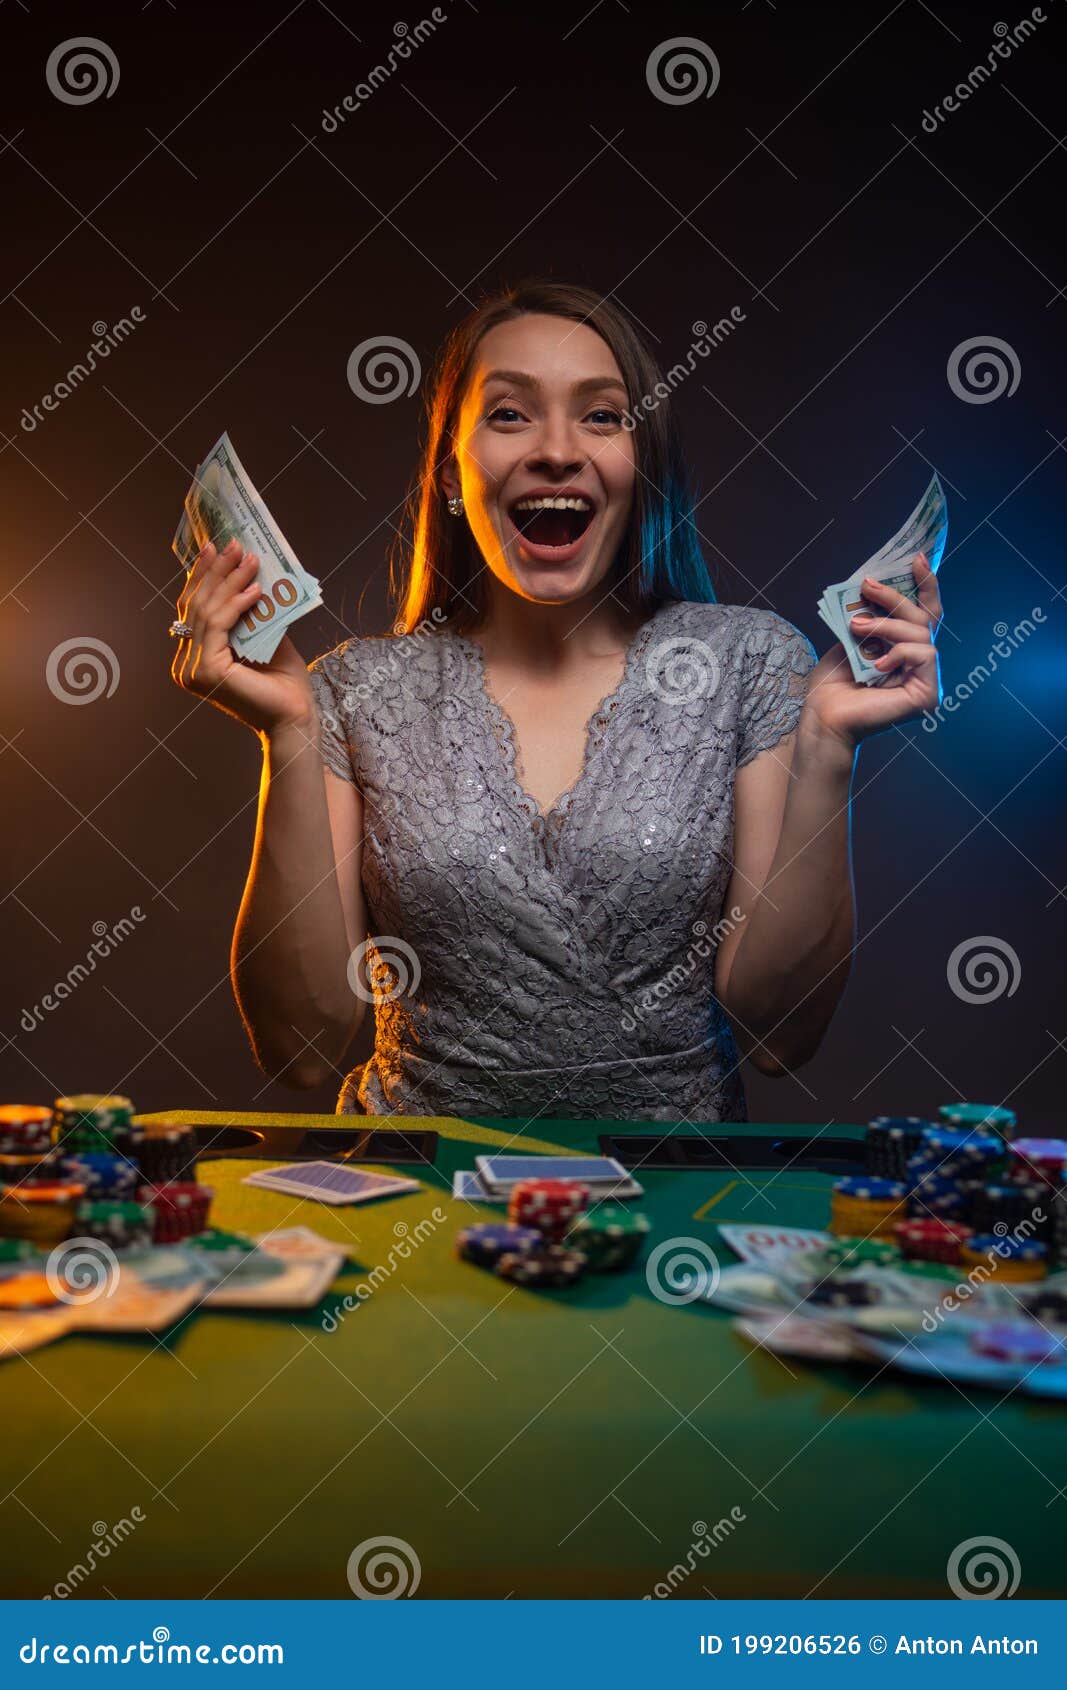 Retrato de uma mulher alegre sentada com amigos à mesa para jogar